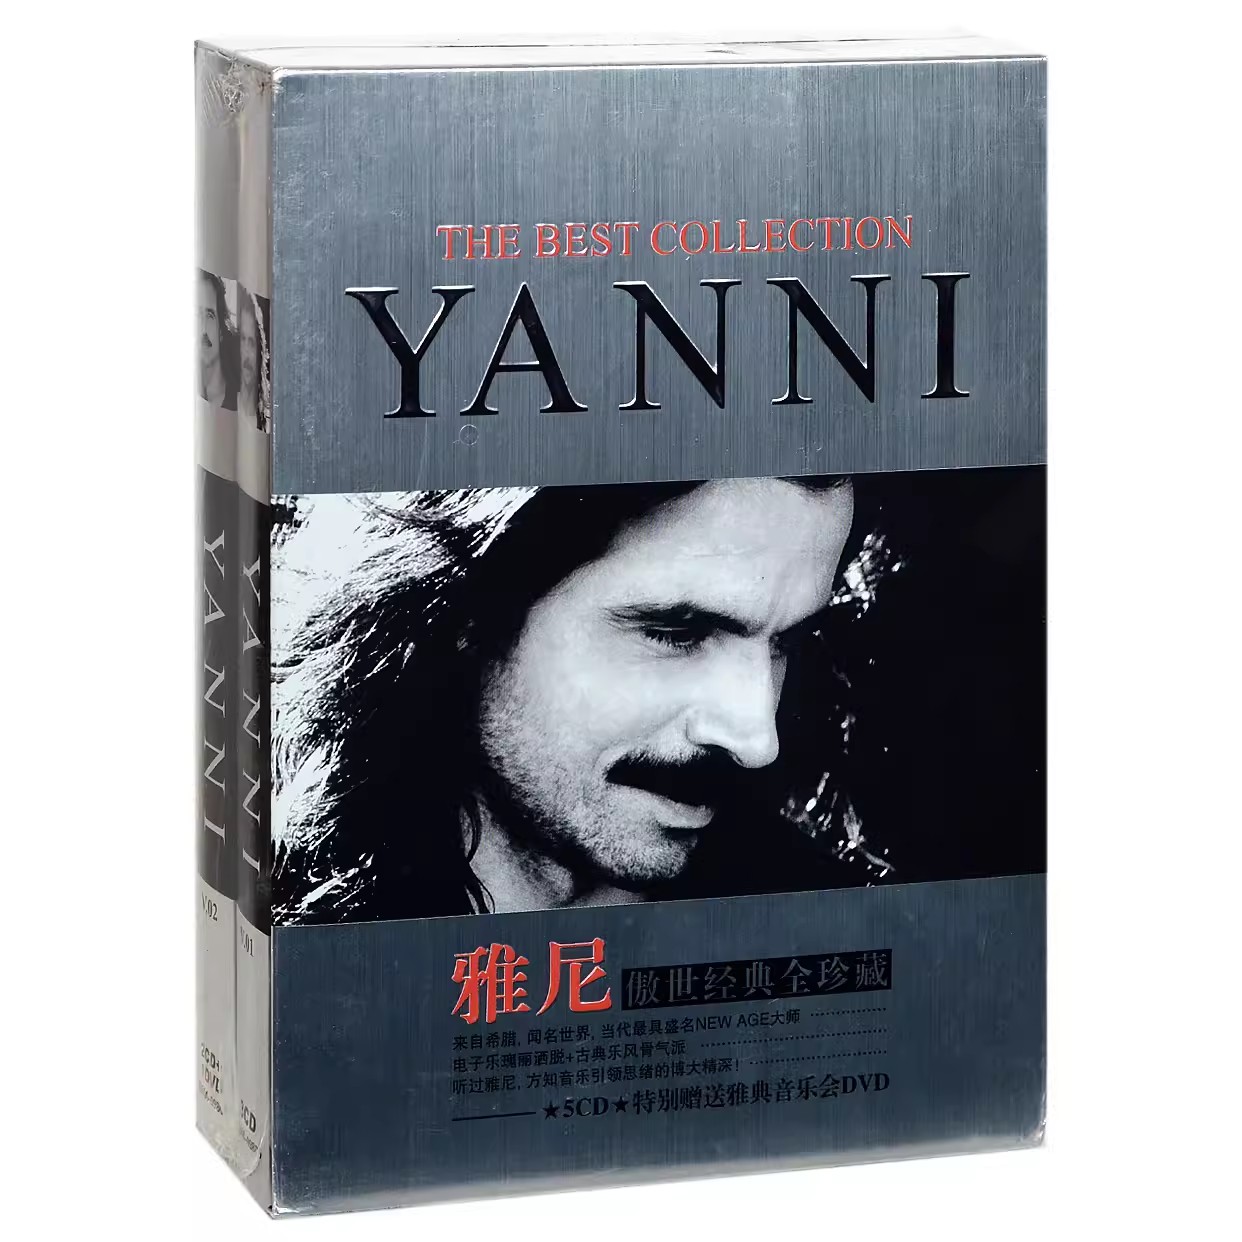 Yanni 雅尼专辑 经典全珍藏 5CD+雅典音乐会DVD 新世纪音乐碟片